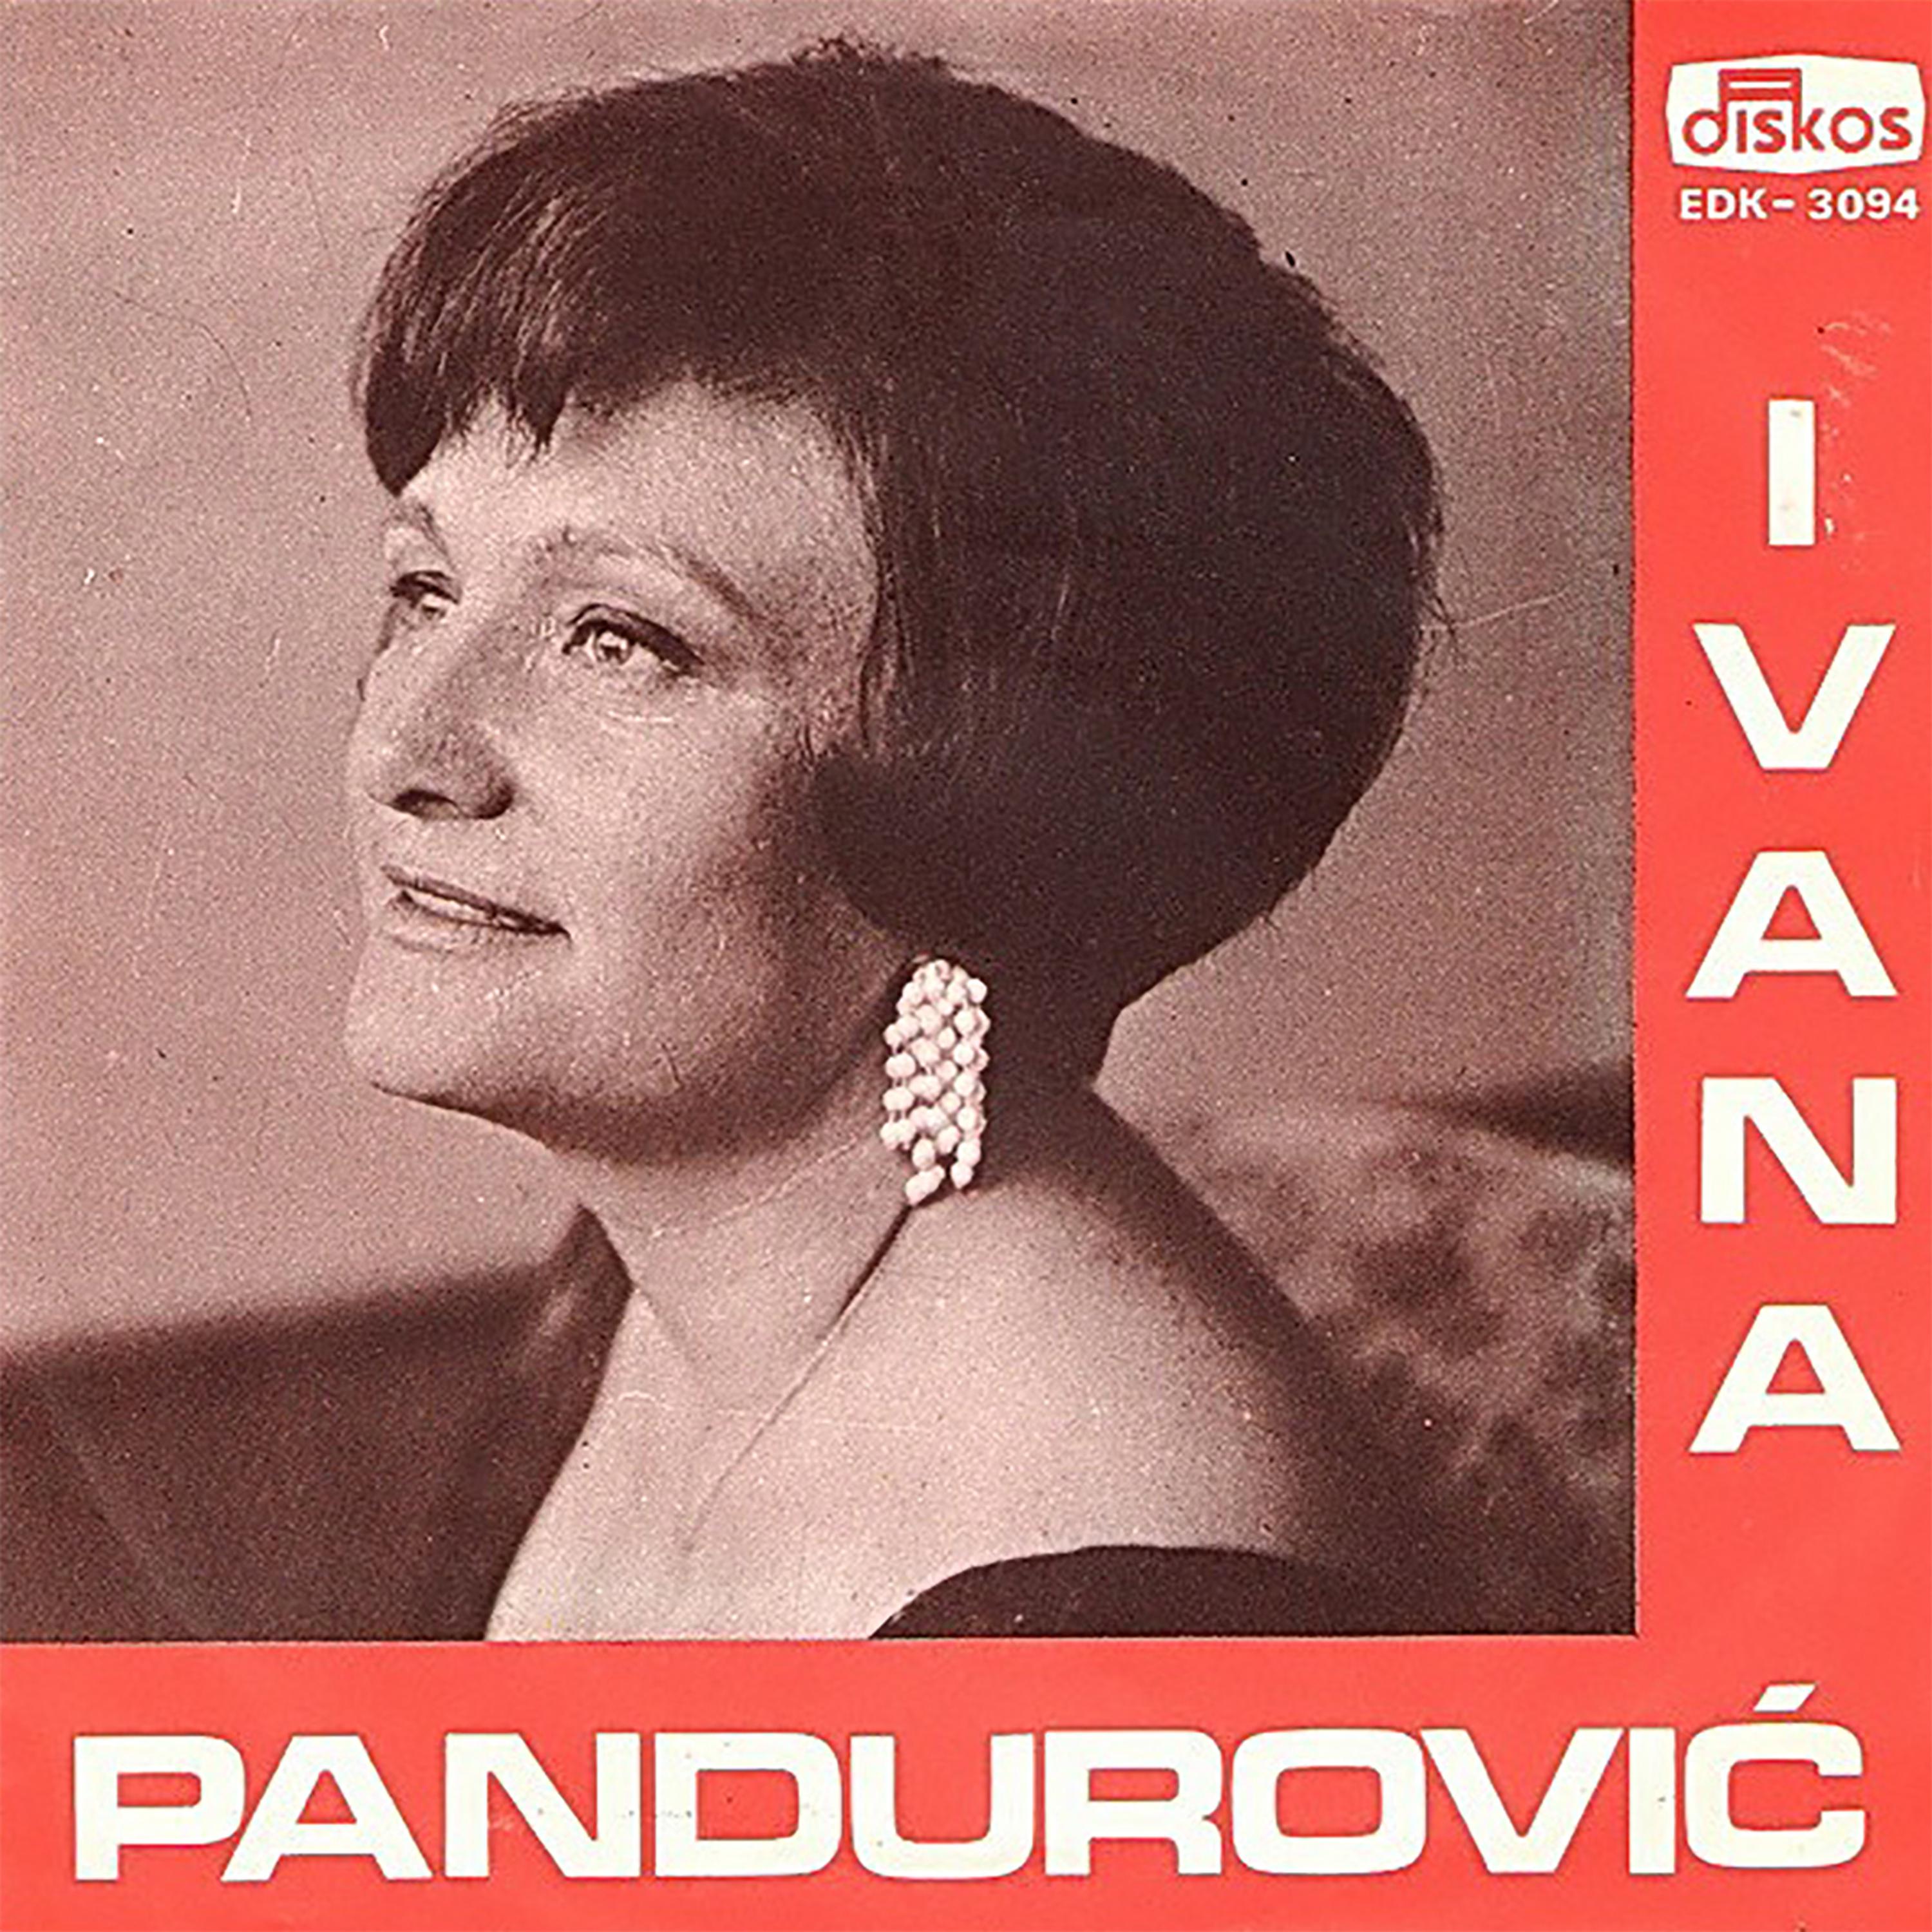 Ivana Pandurovic